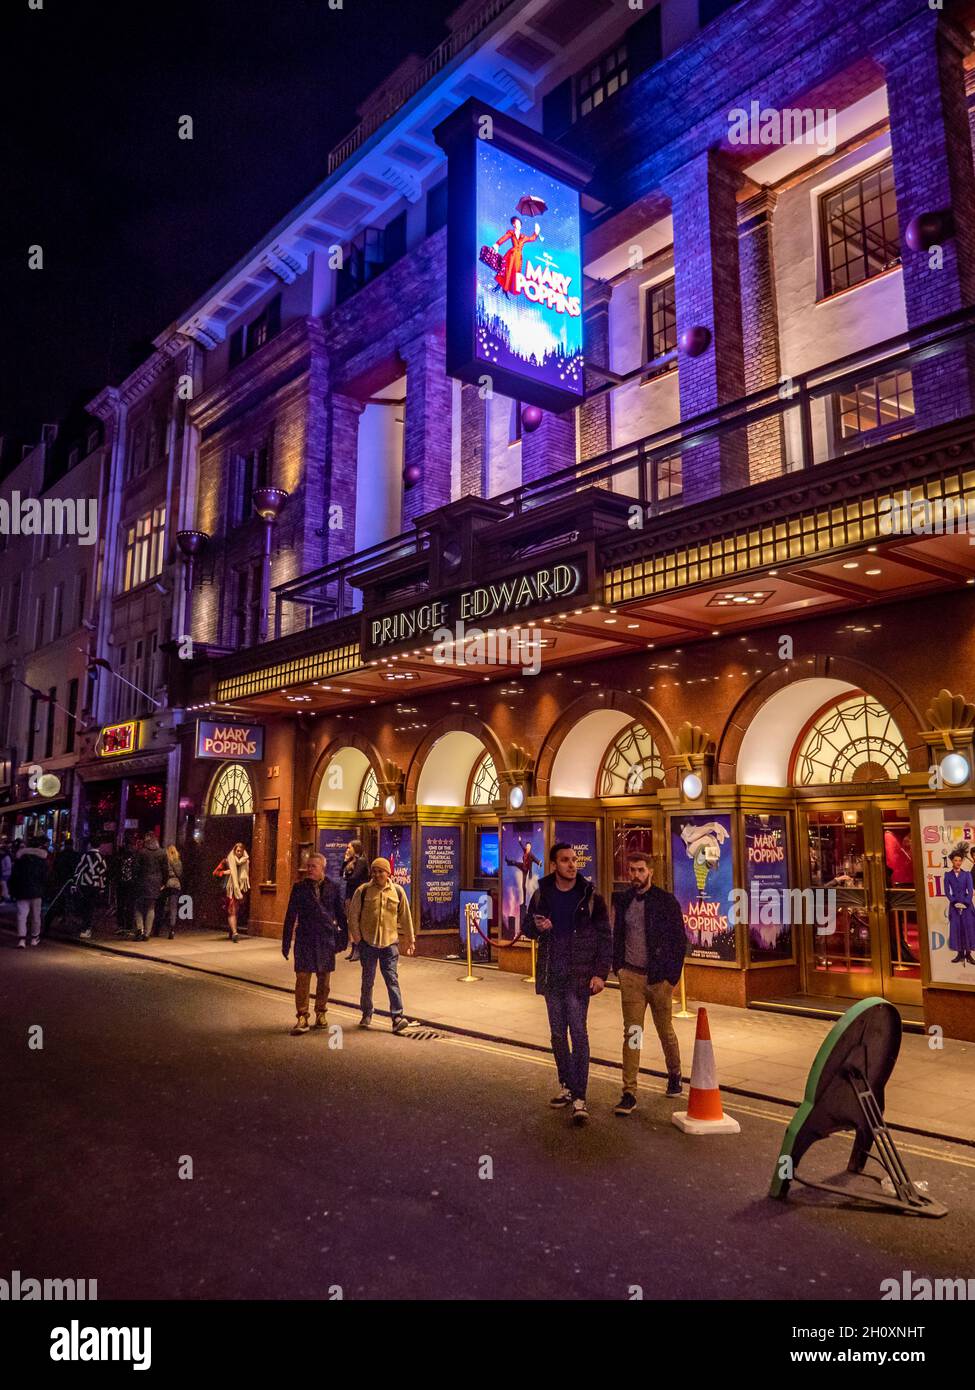 Mary Poppins, Prince Edward Theatre, Londra. Patroni nel quartiere dei teatri del West End lasciando una produzione di scena del popolare film Disney. Foto Stock